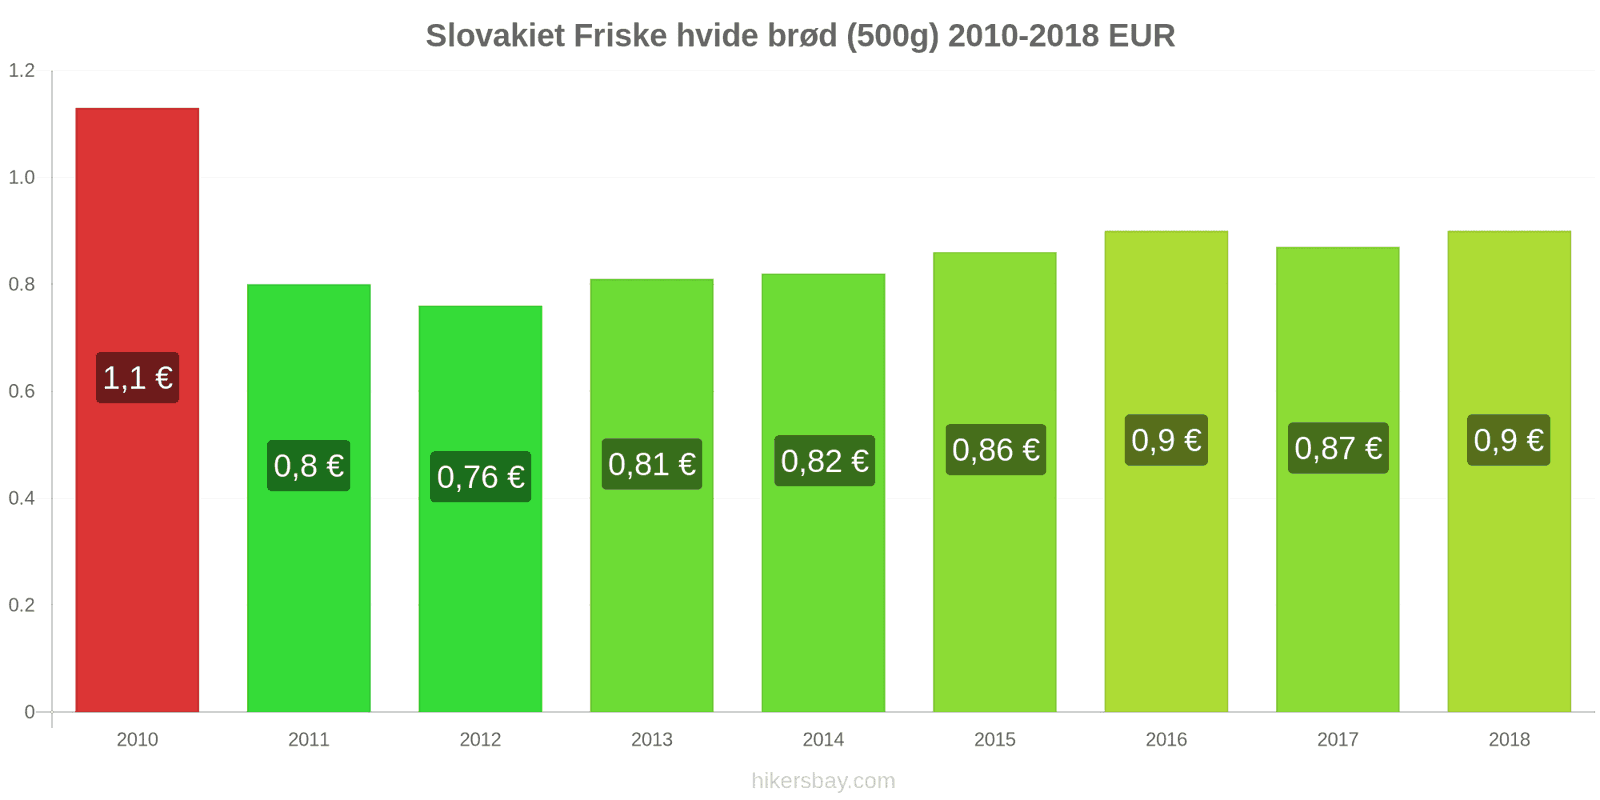 Slovakiet prisændringer Friske hvide brød (500g) hikersbay.com